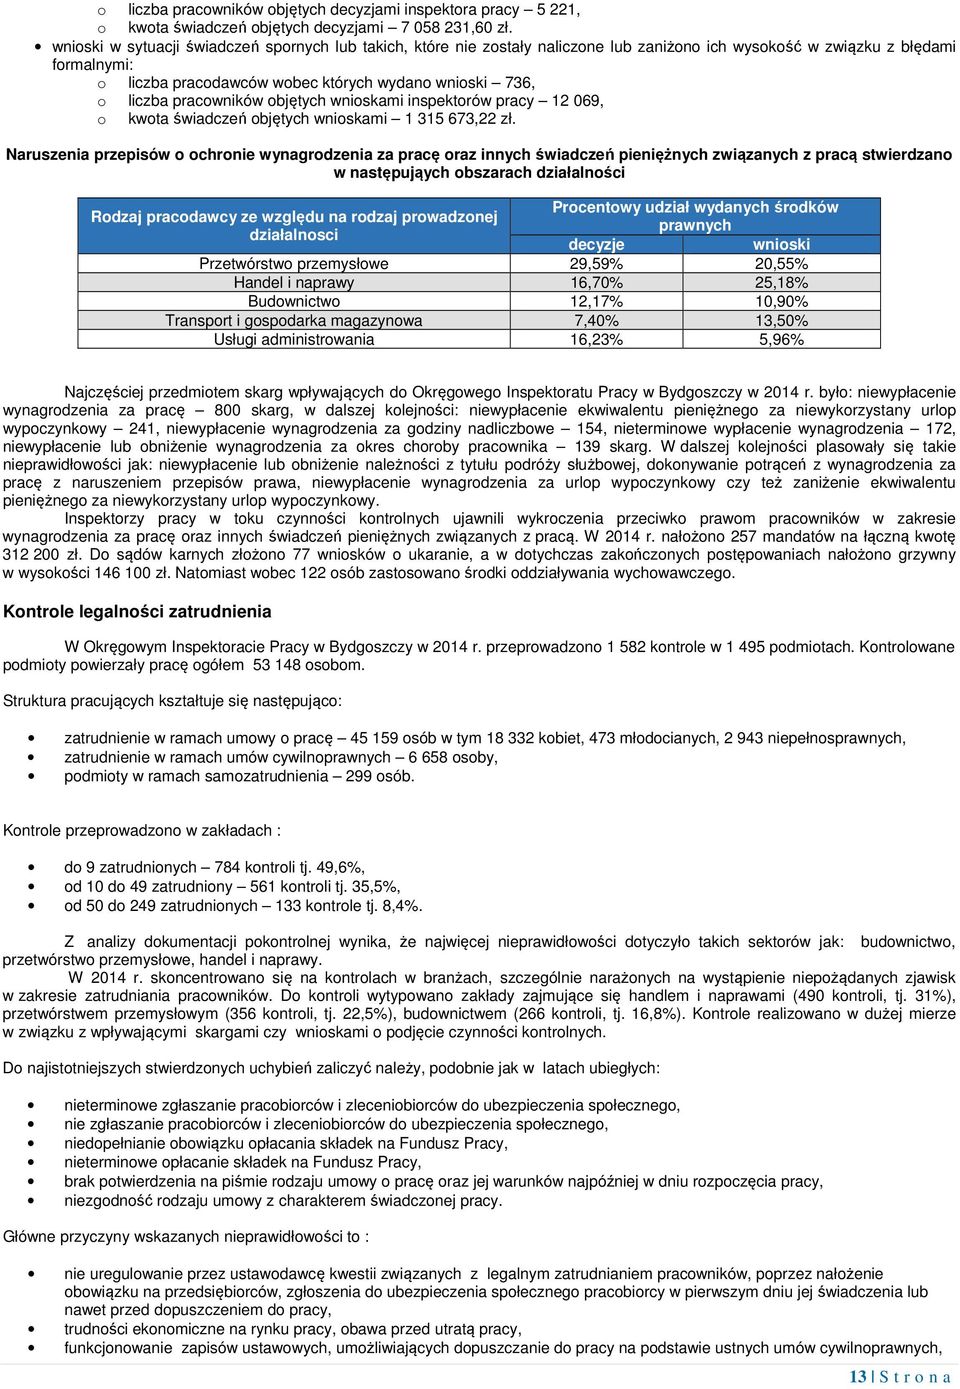 pracowników objętych wnioskami inspektorów pracy 12 069, o kwota świadczeń objętych wnioskami 1 315 673,22 zł.